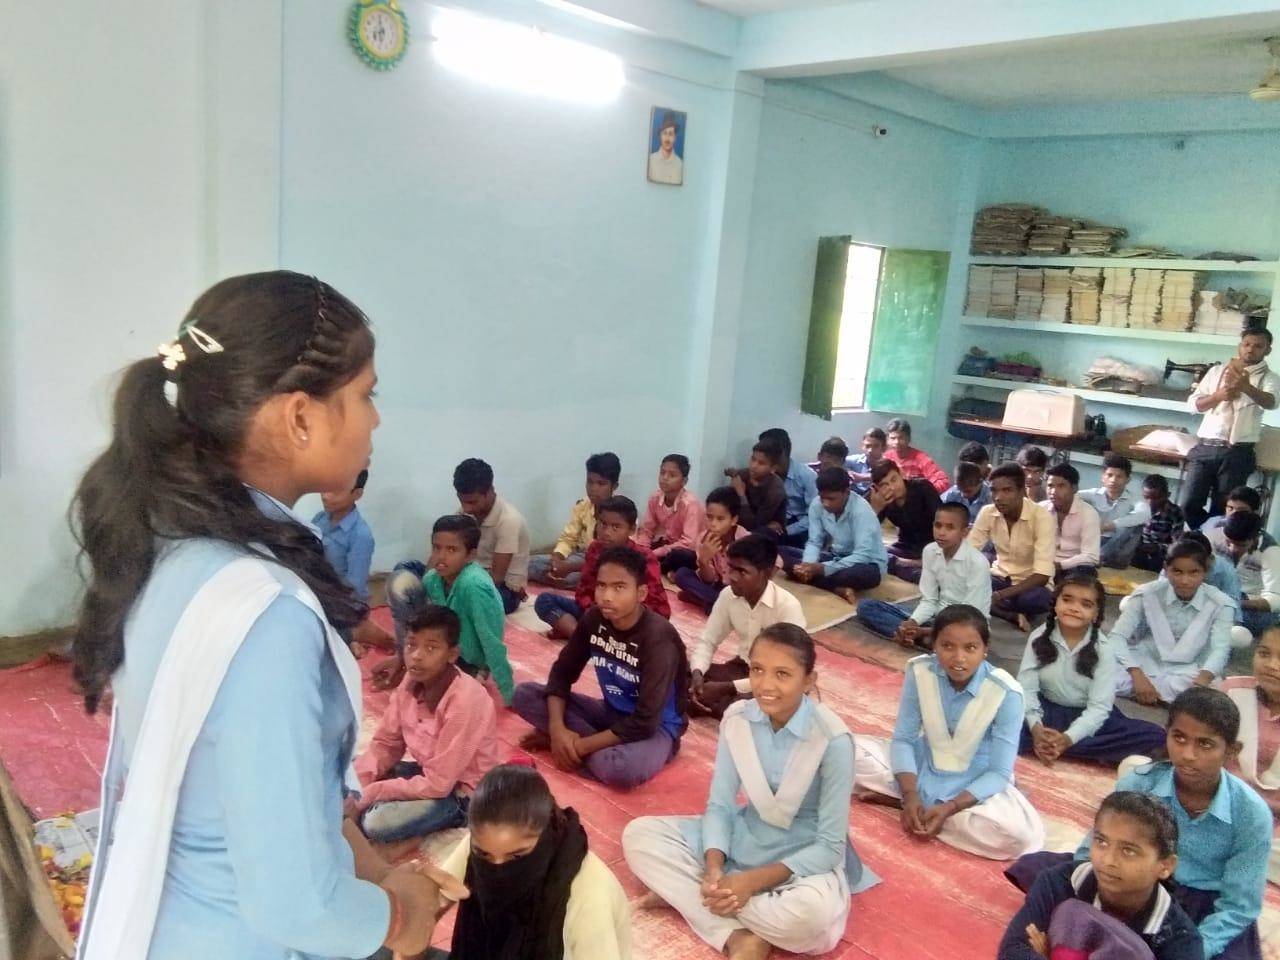 अंतरराष्ट्रीय बालिका दिवस पर नौगढ़ में आयोजित हुआ कार्यक्रम